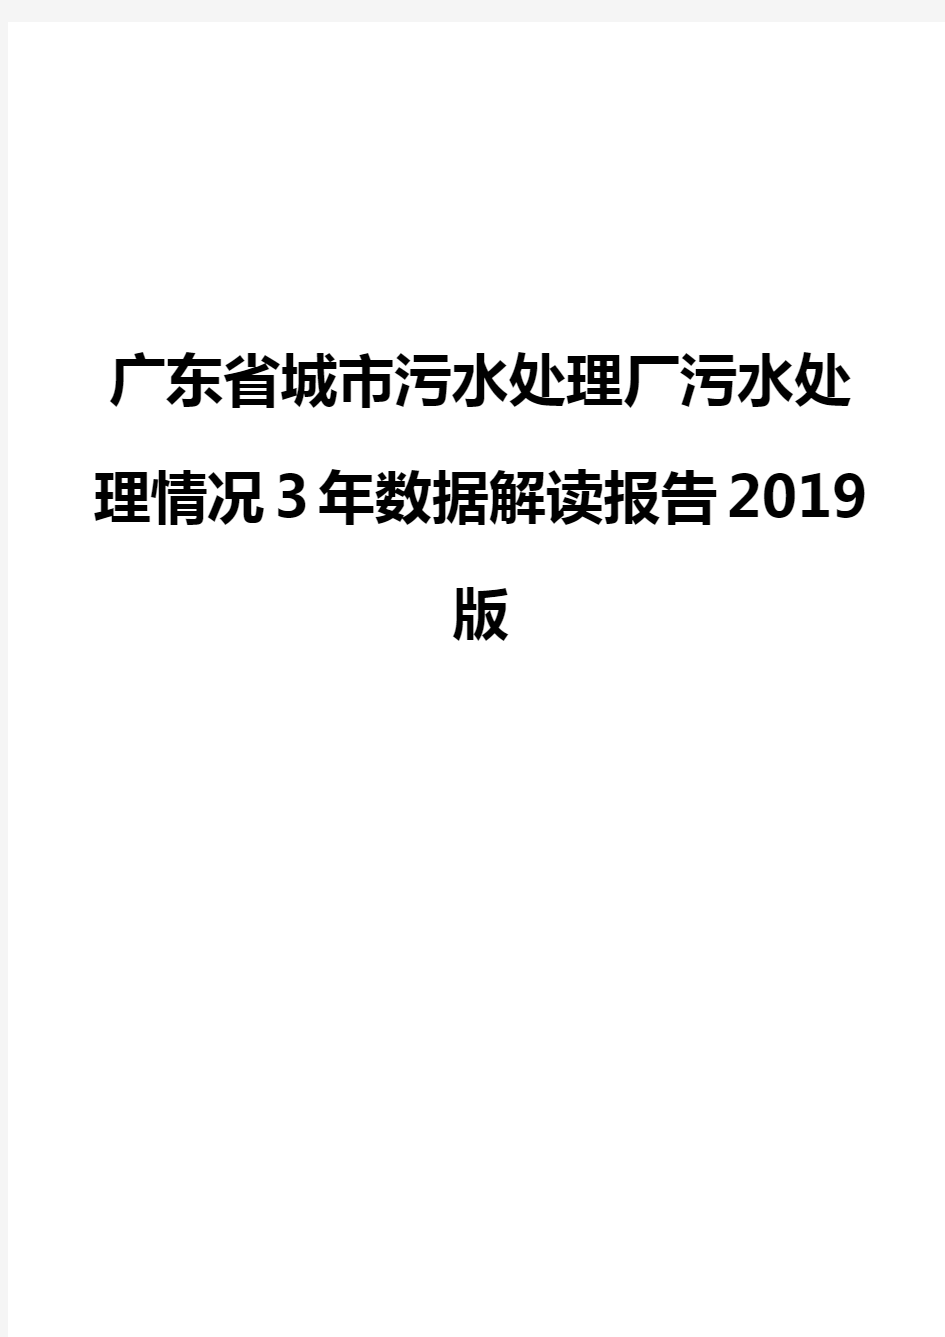 广东省城市污水处理厂污水处理情况3年数据解读报告2019版